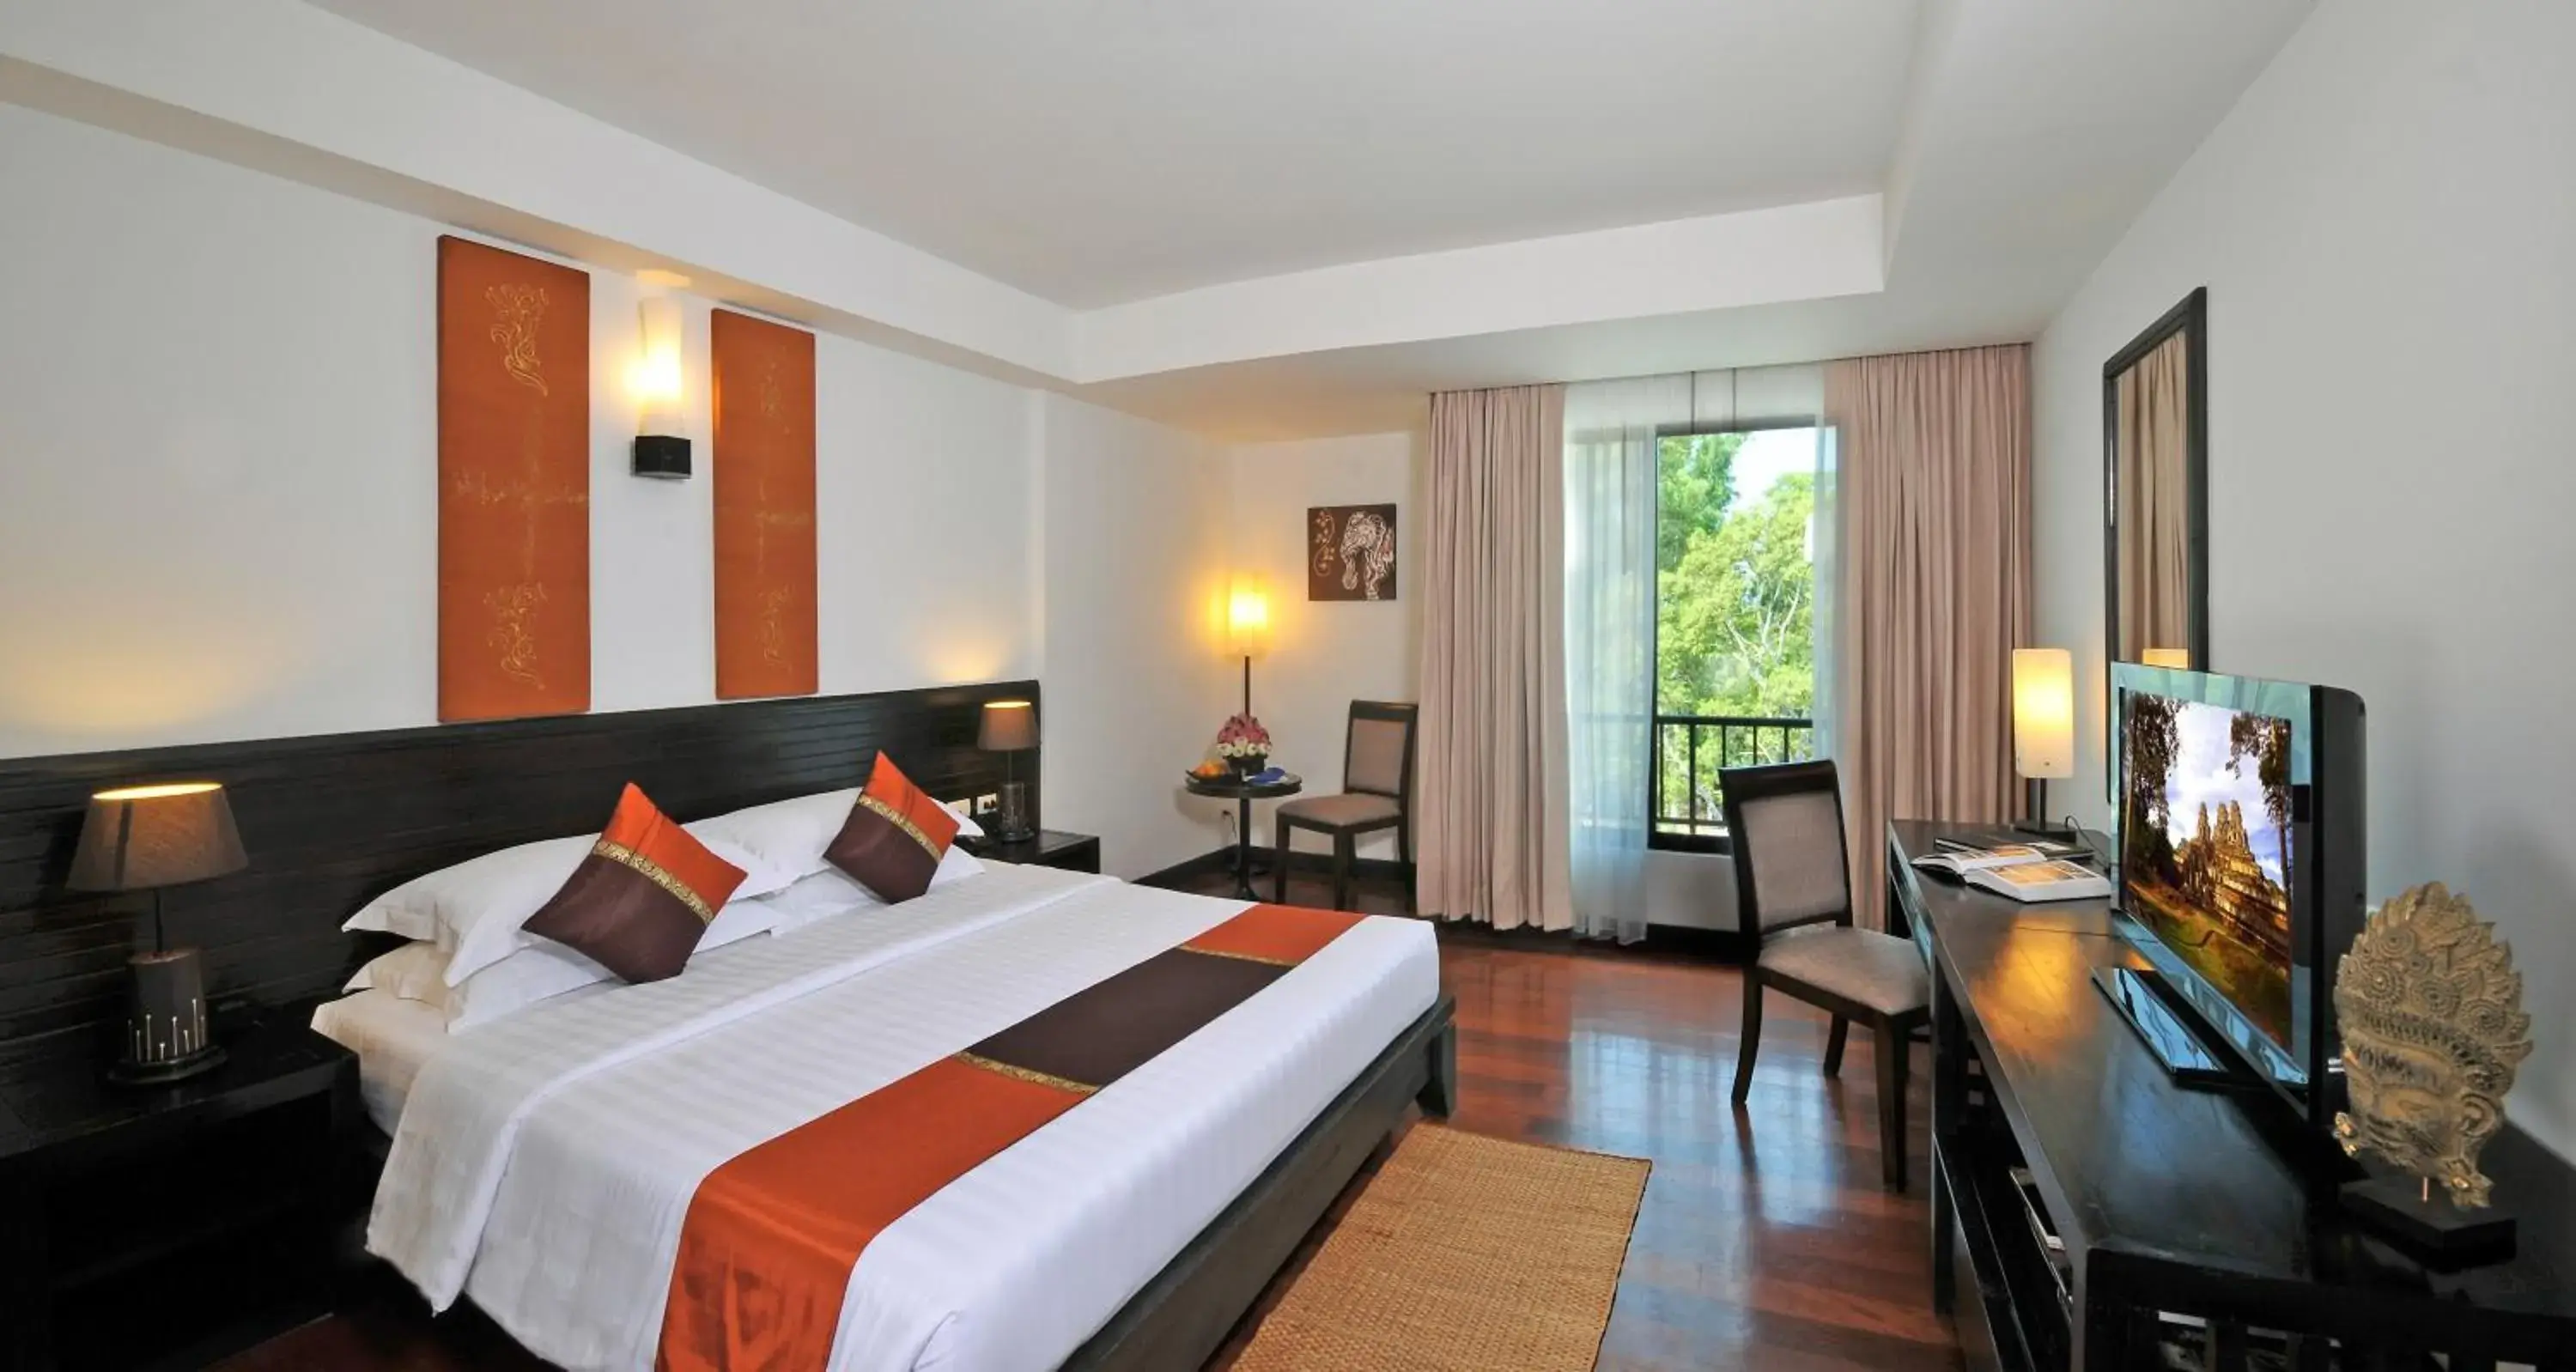 Bedroom in Tara Angkor Hotel